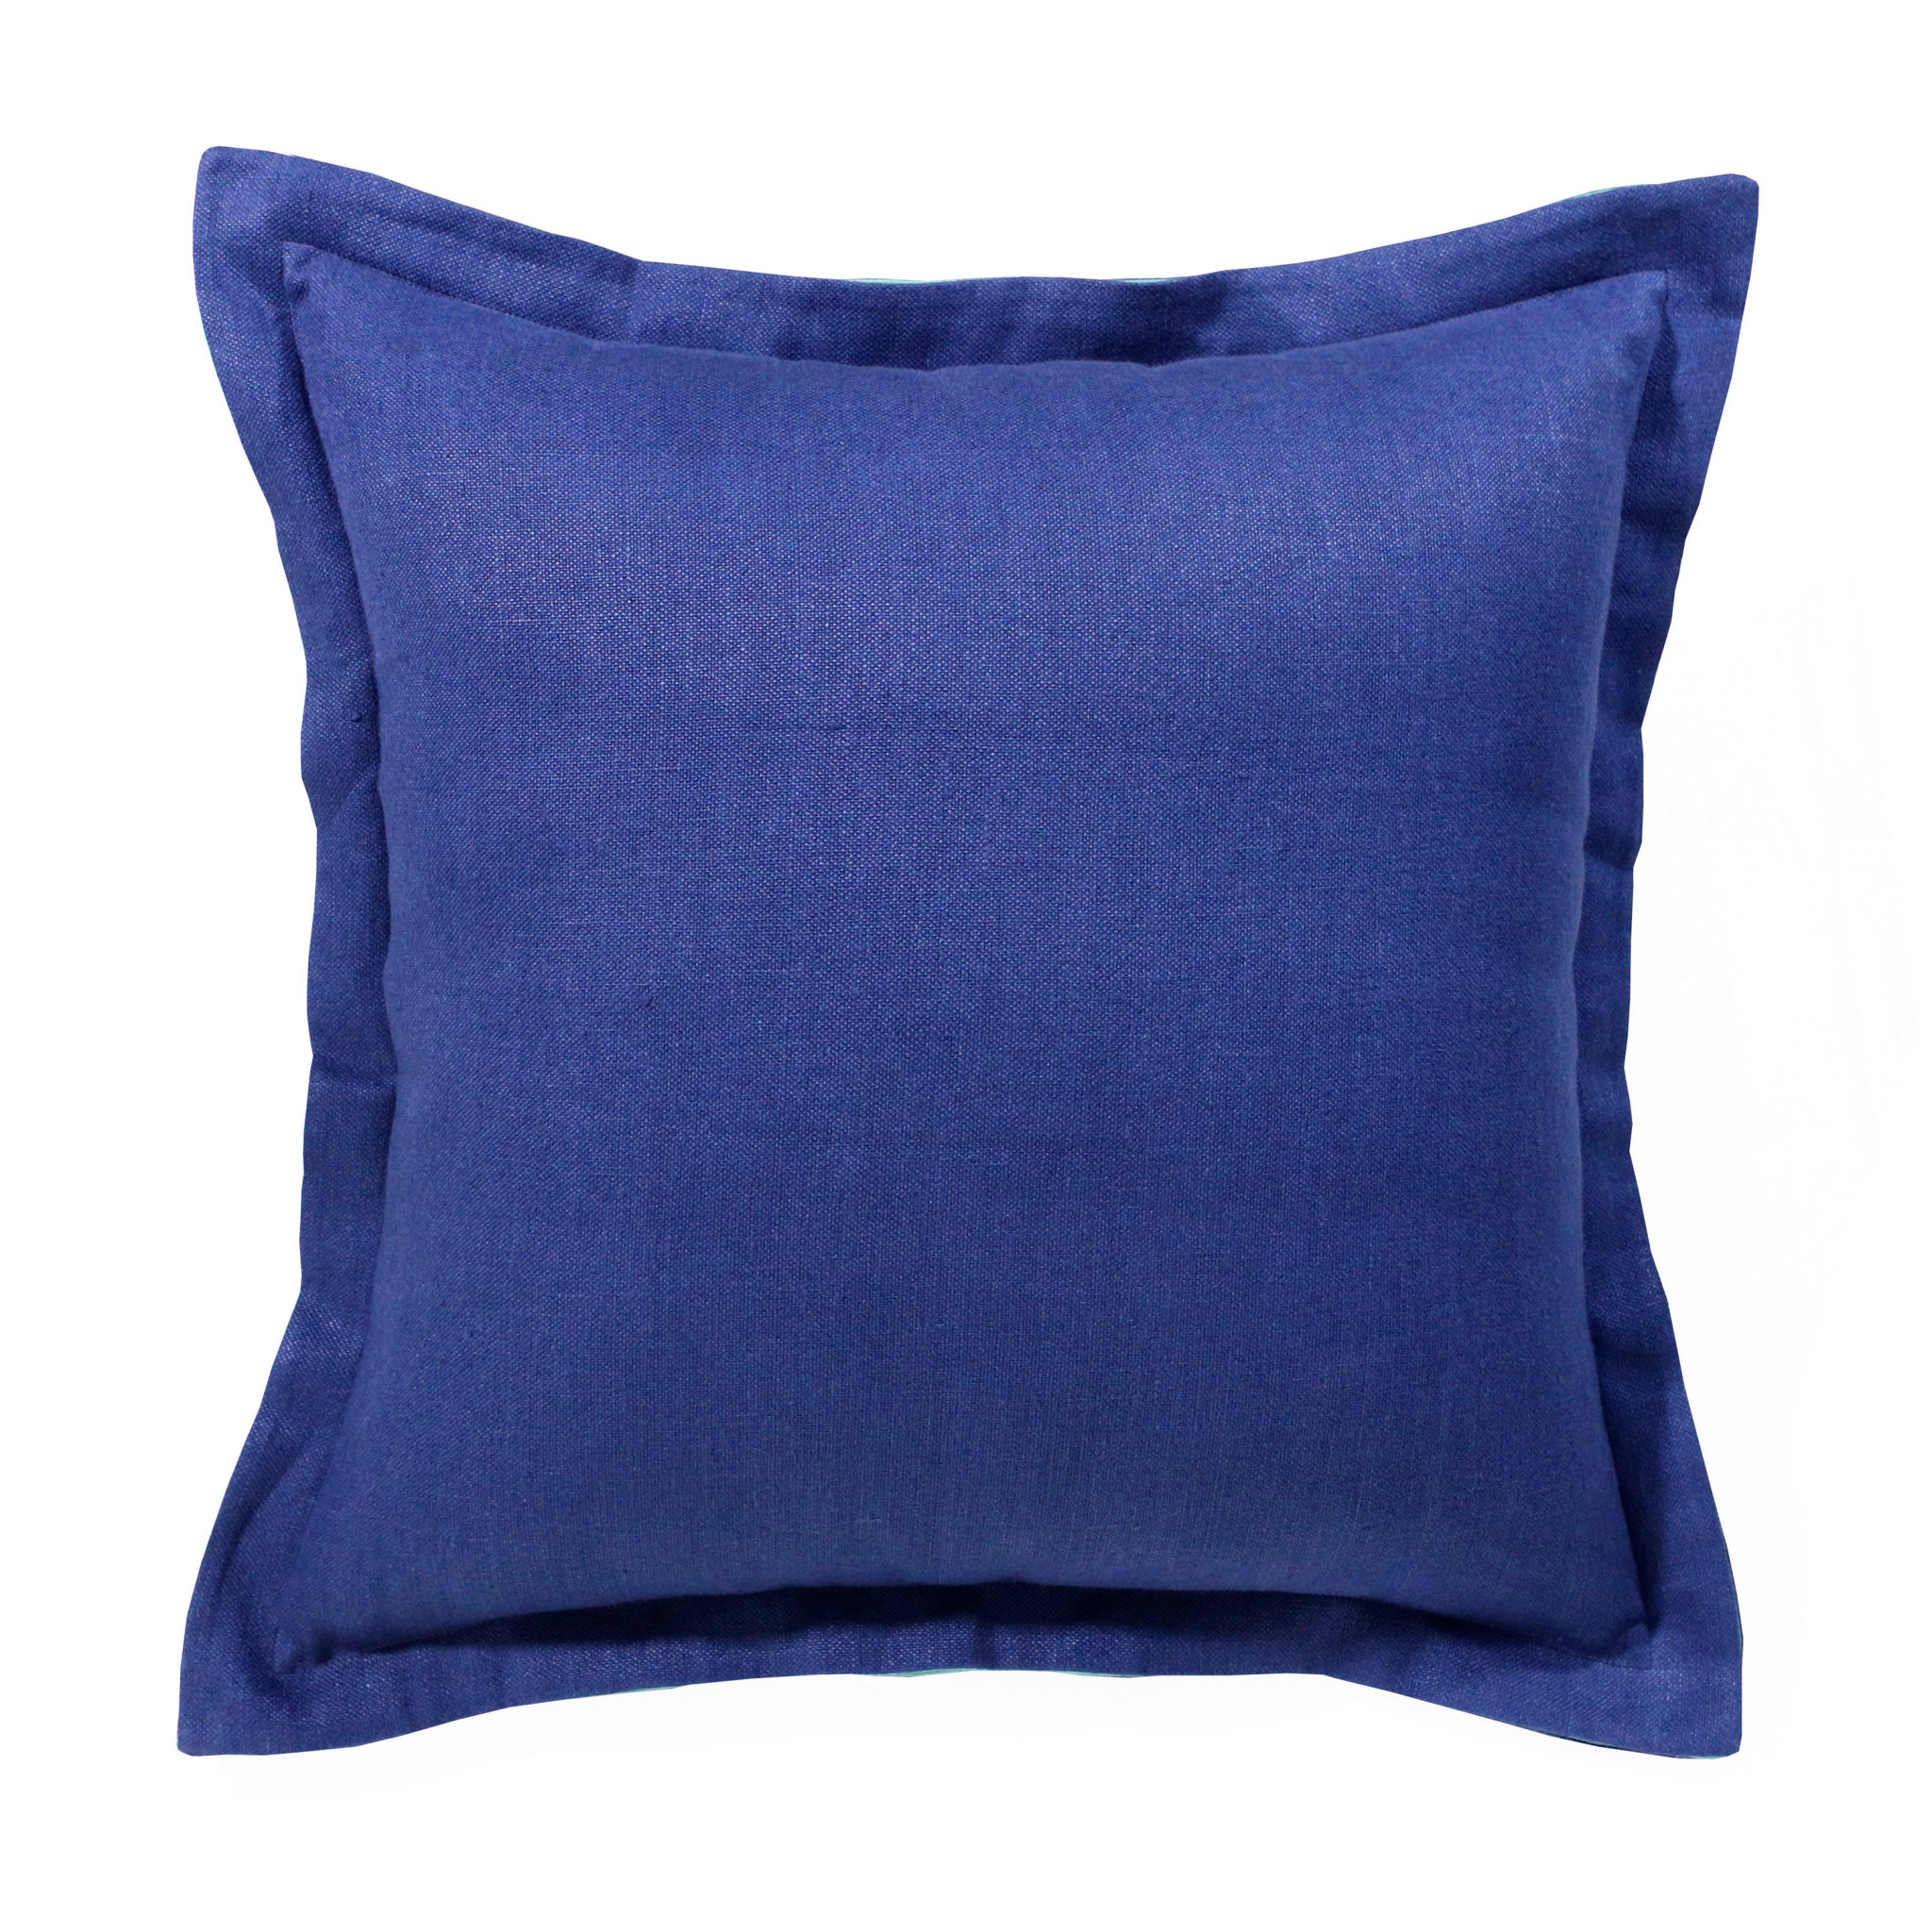 20" X 20" Navy Linen Zippered Pillow-516989-1